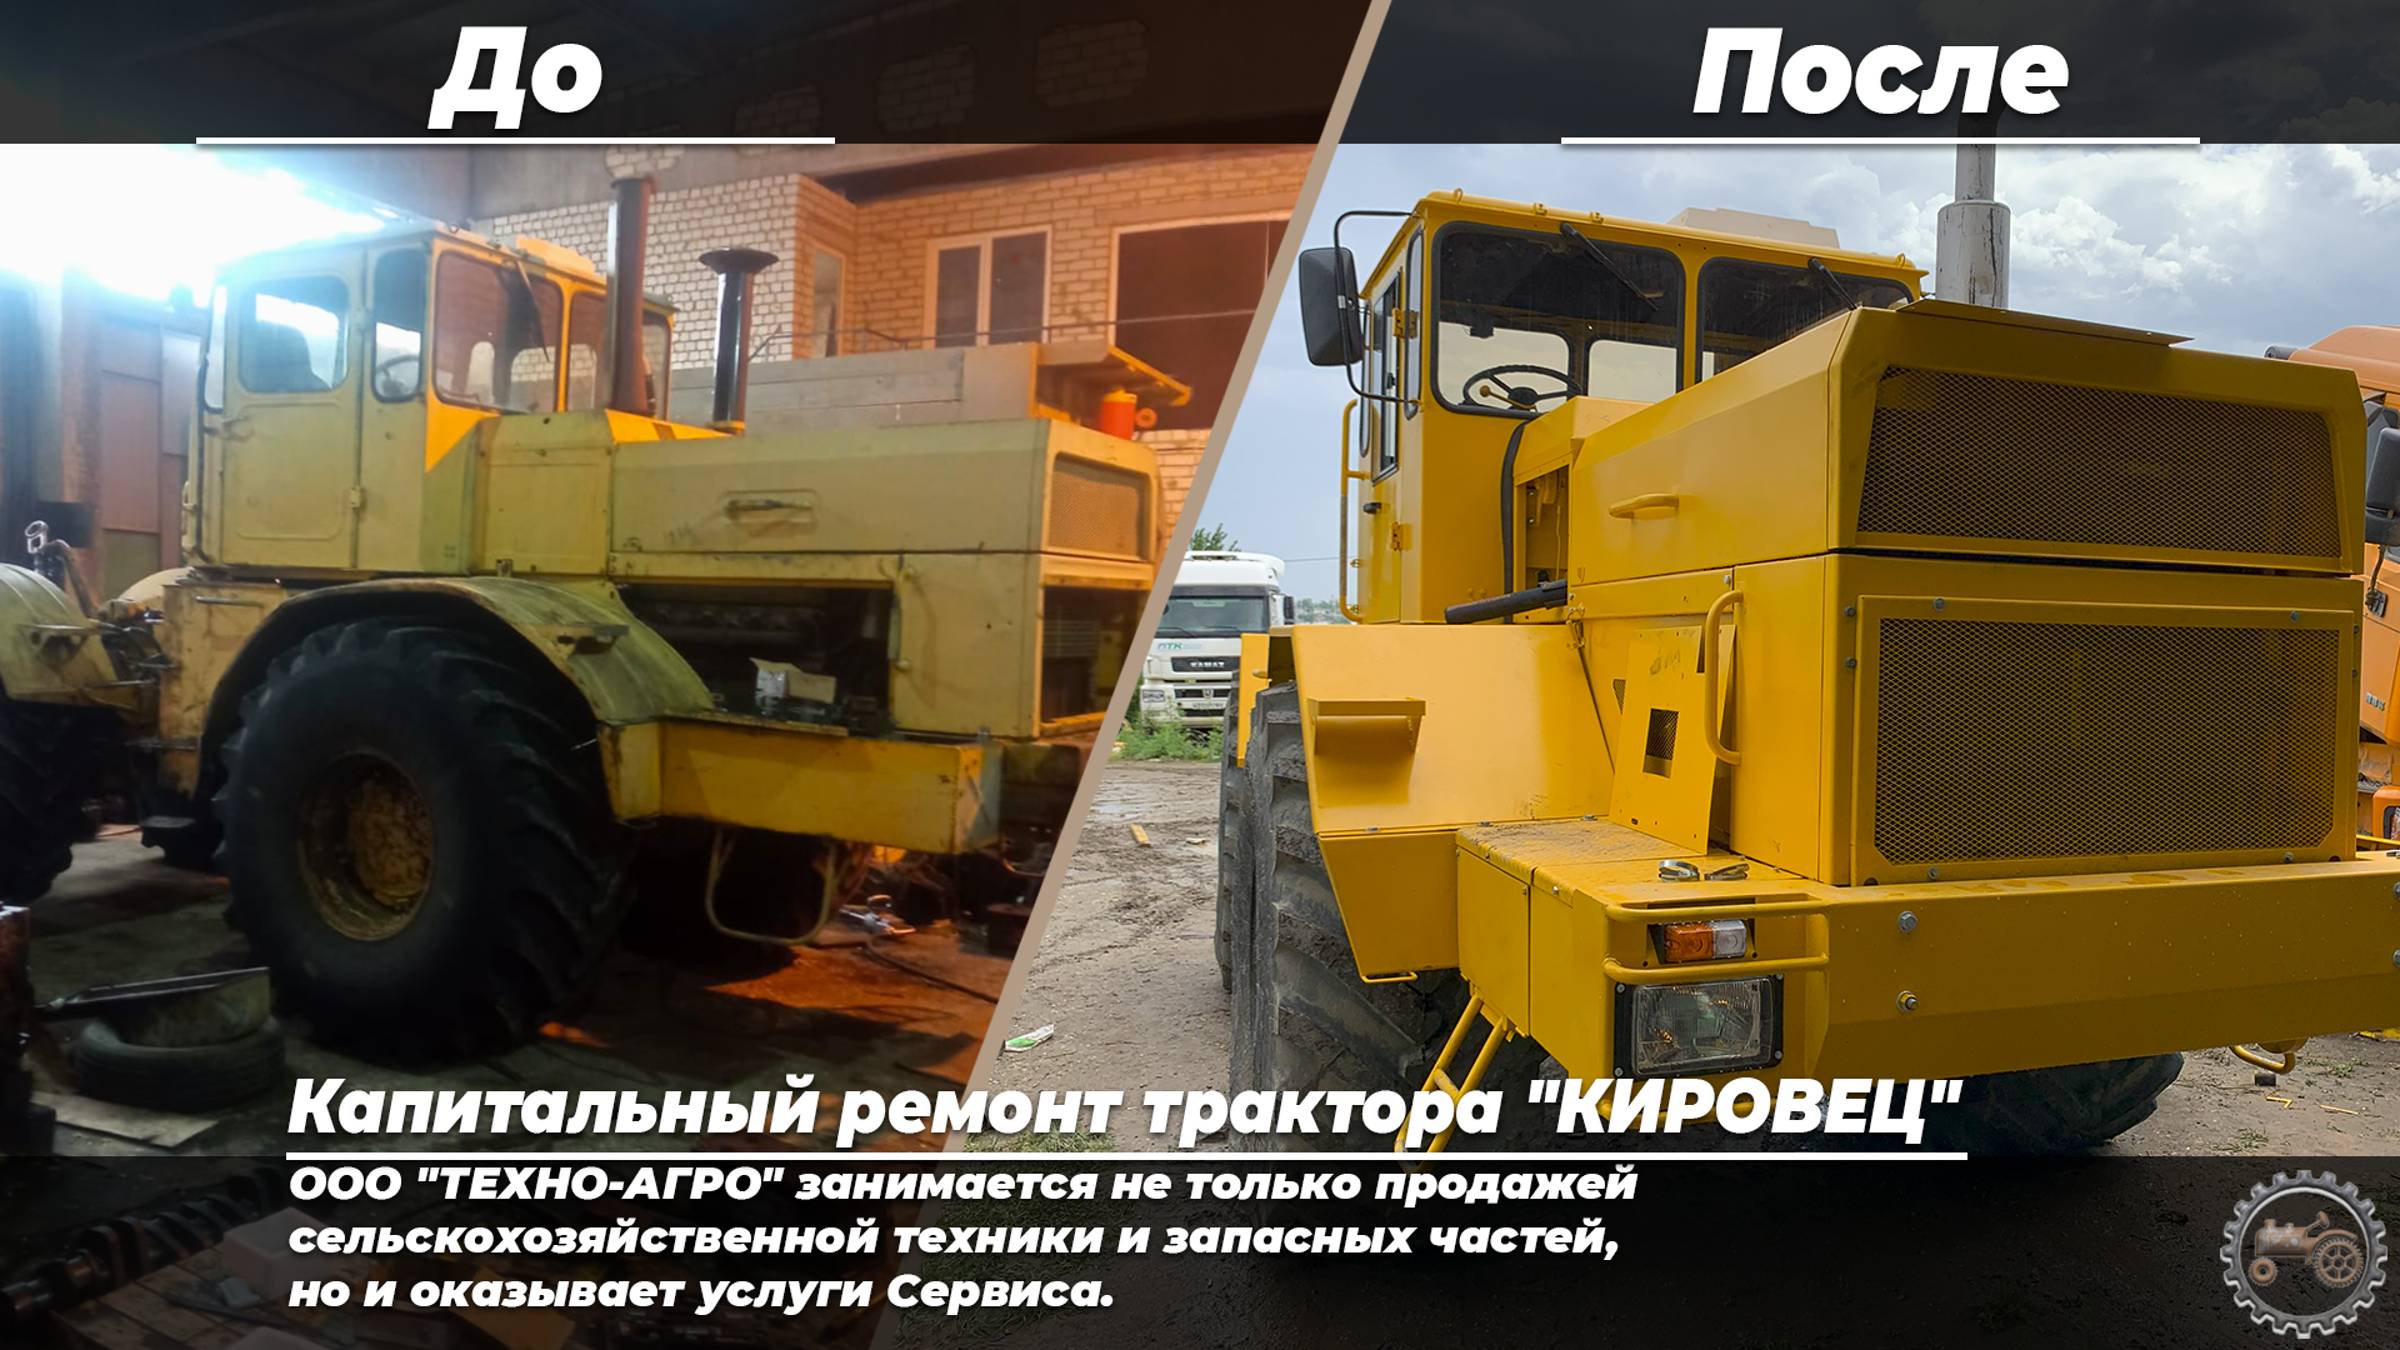 Капитальный ремонт трактора "КИРОВЕЦ"